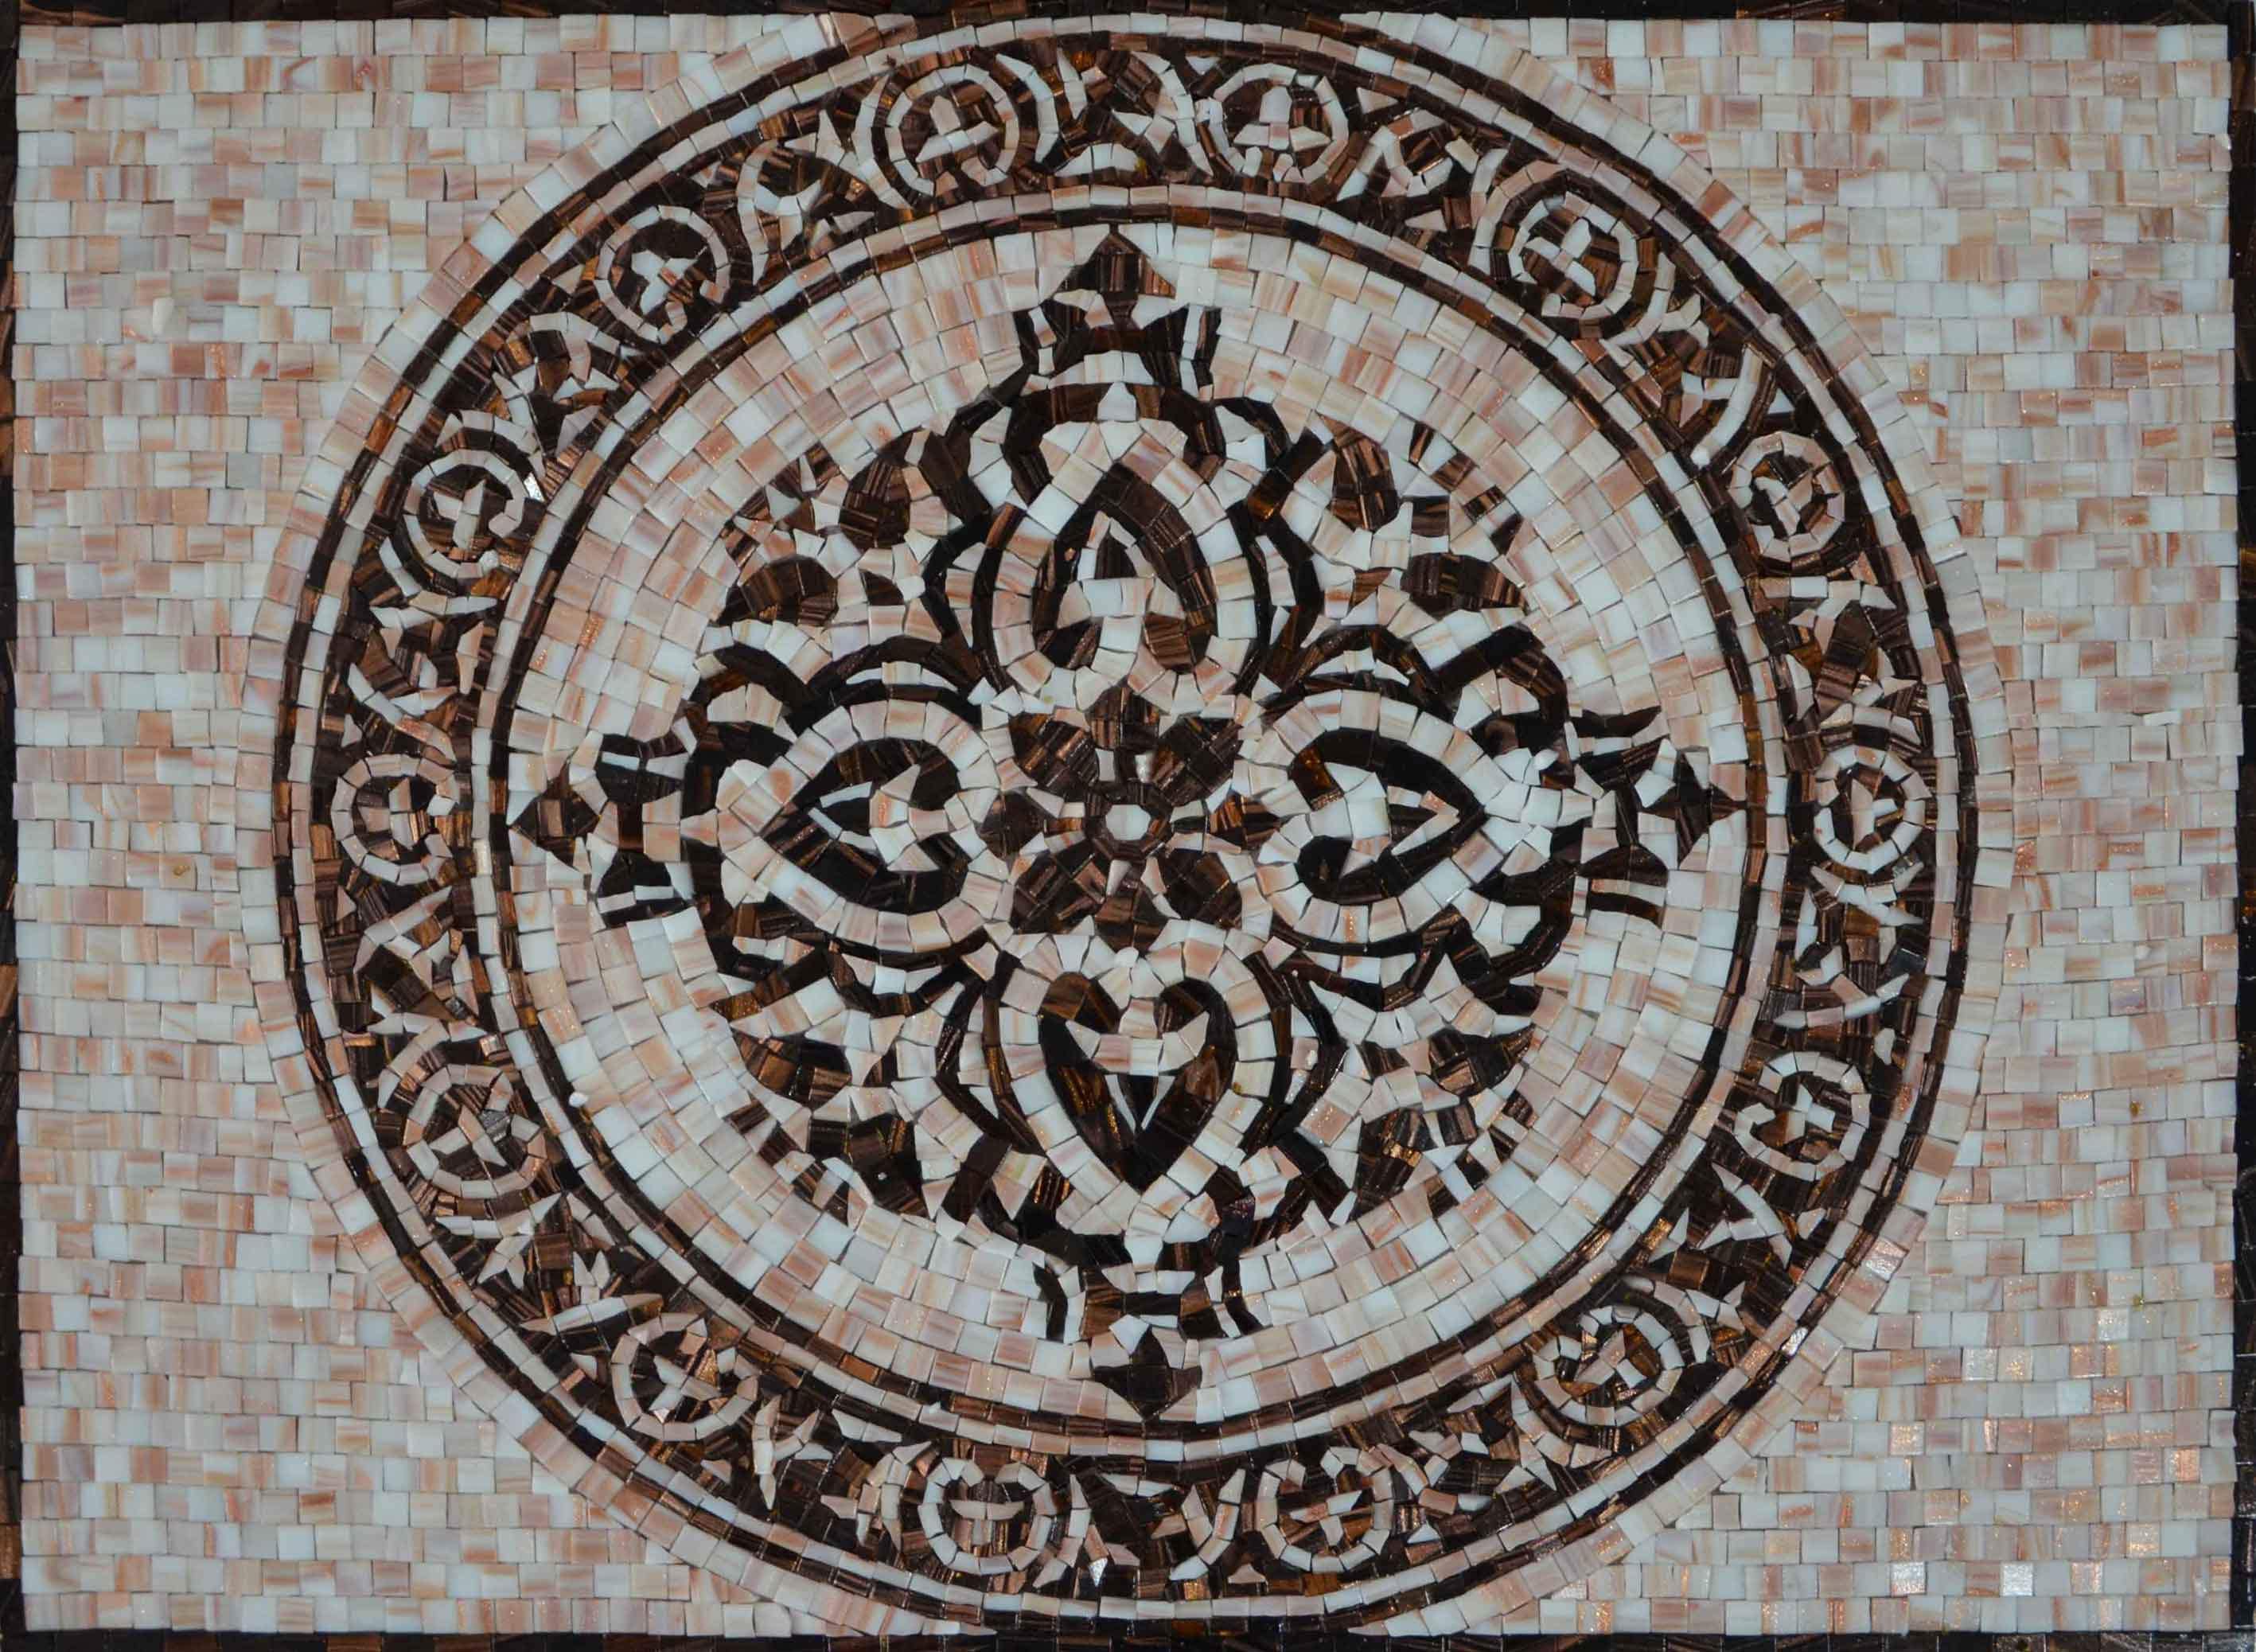 Mosaic Artwork - Royal Flower